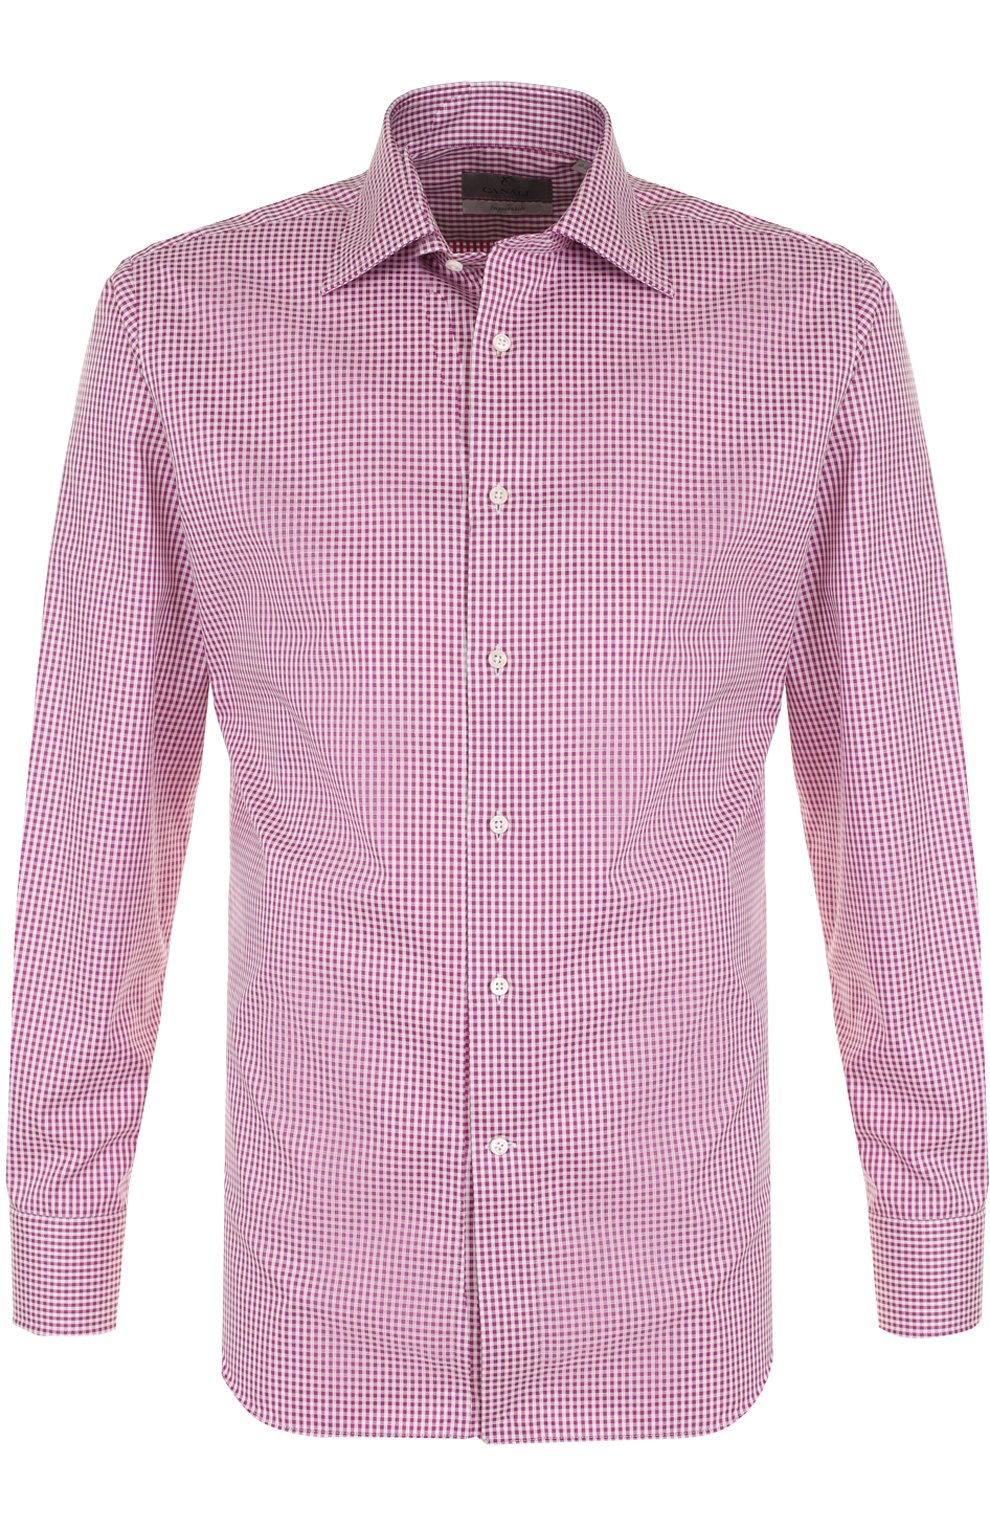 Рубашка цум. Рубашка с воротником Кент. Розовая рубашка. Розовая рубашка мужская. Хлопковая сорочка мужская.